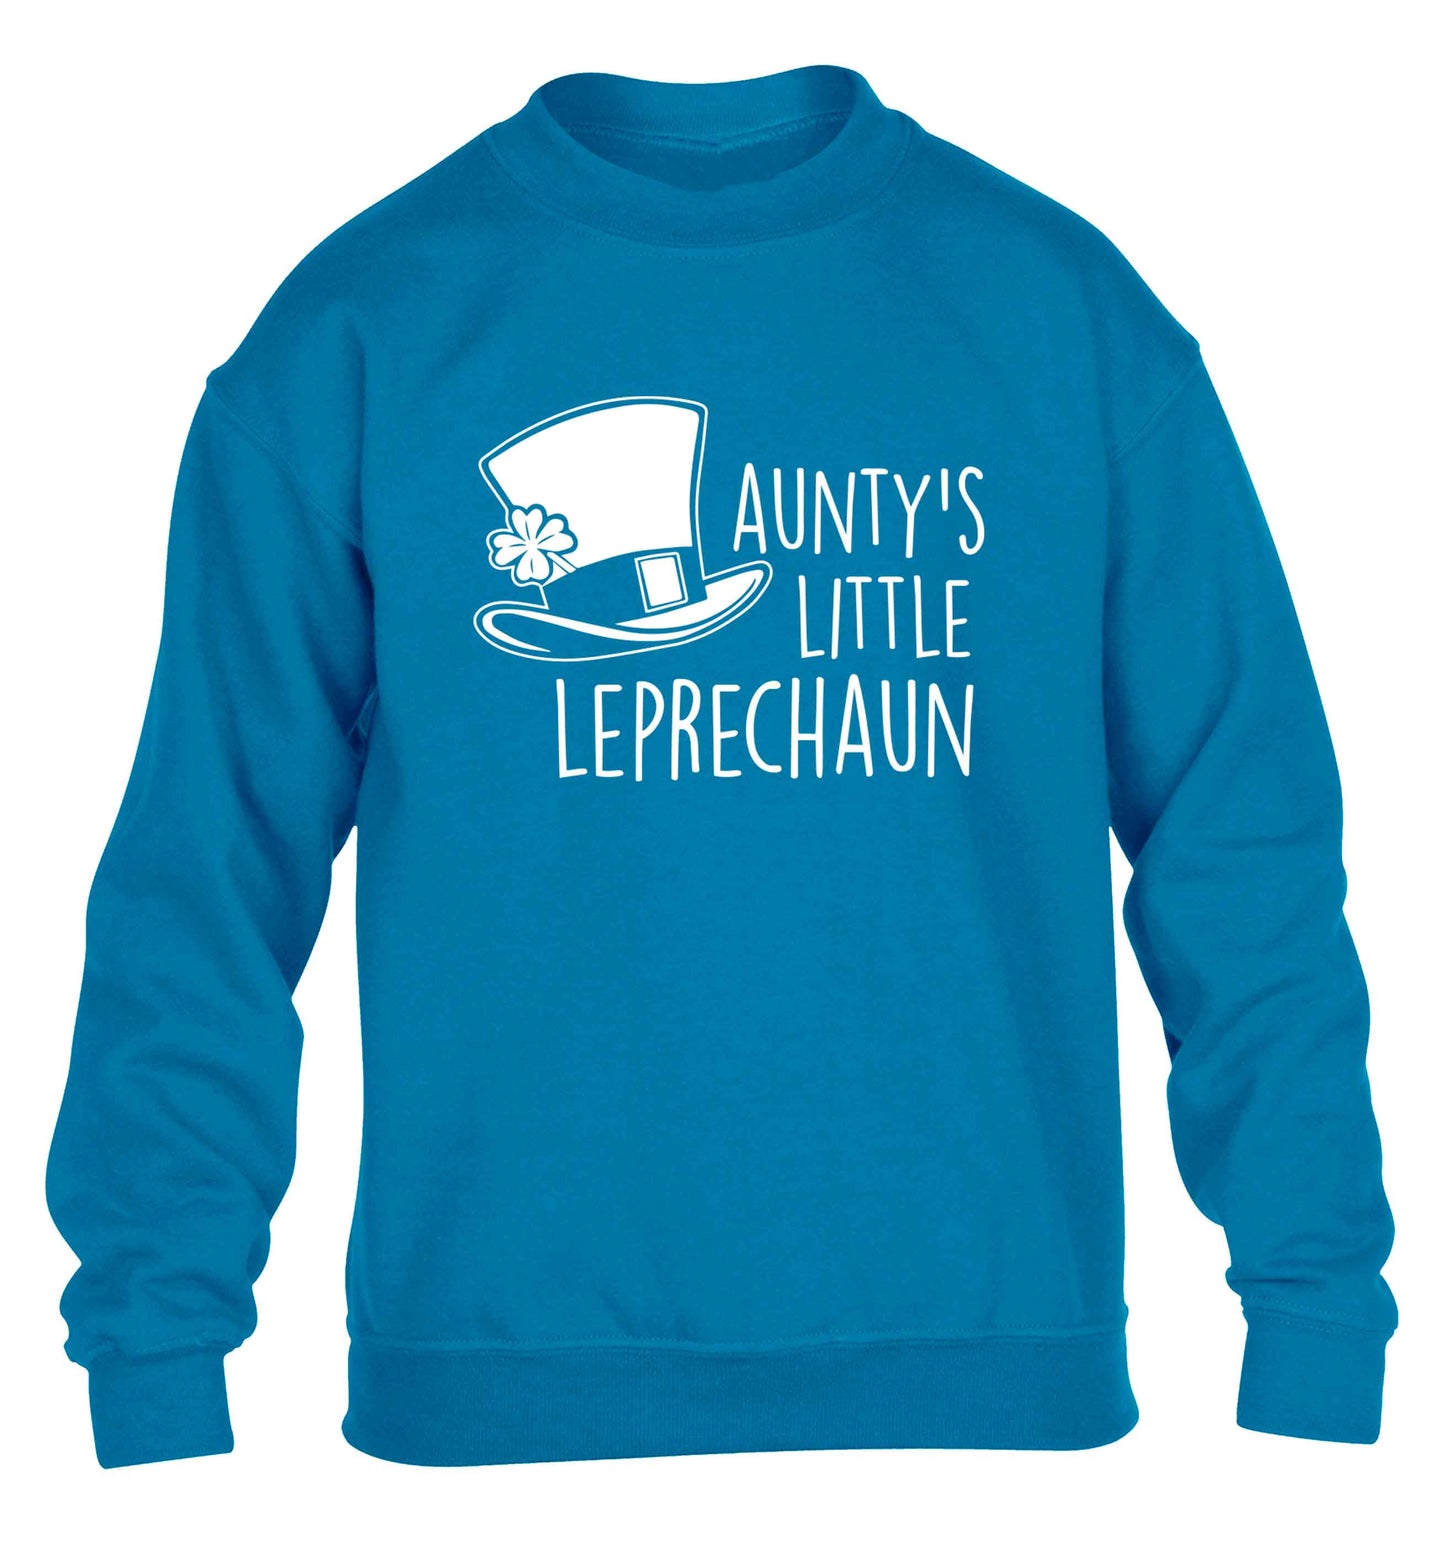 Aunty's little leprechaun children's blue sweater 12-13 Years